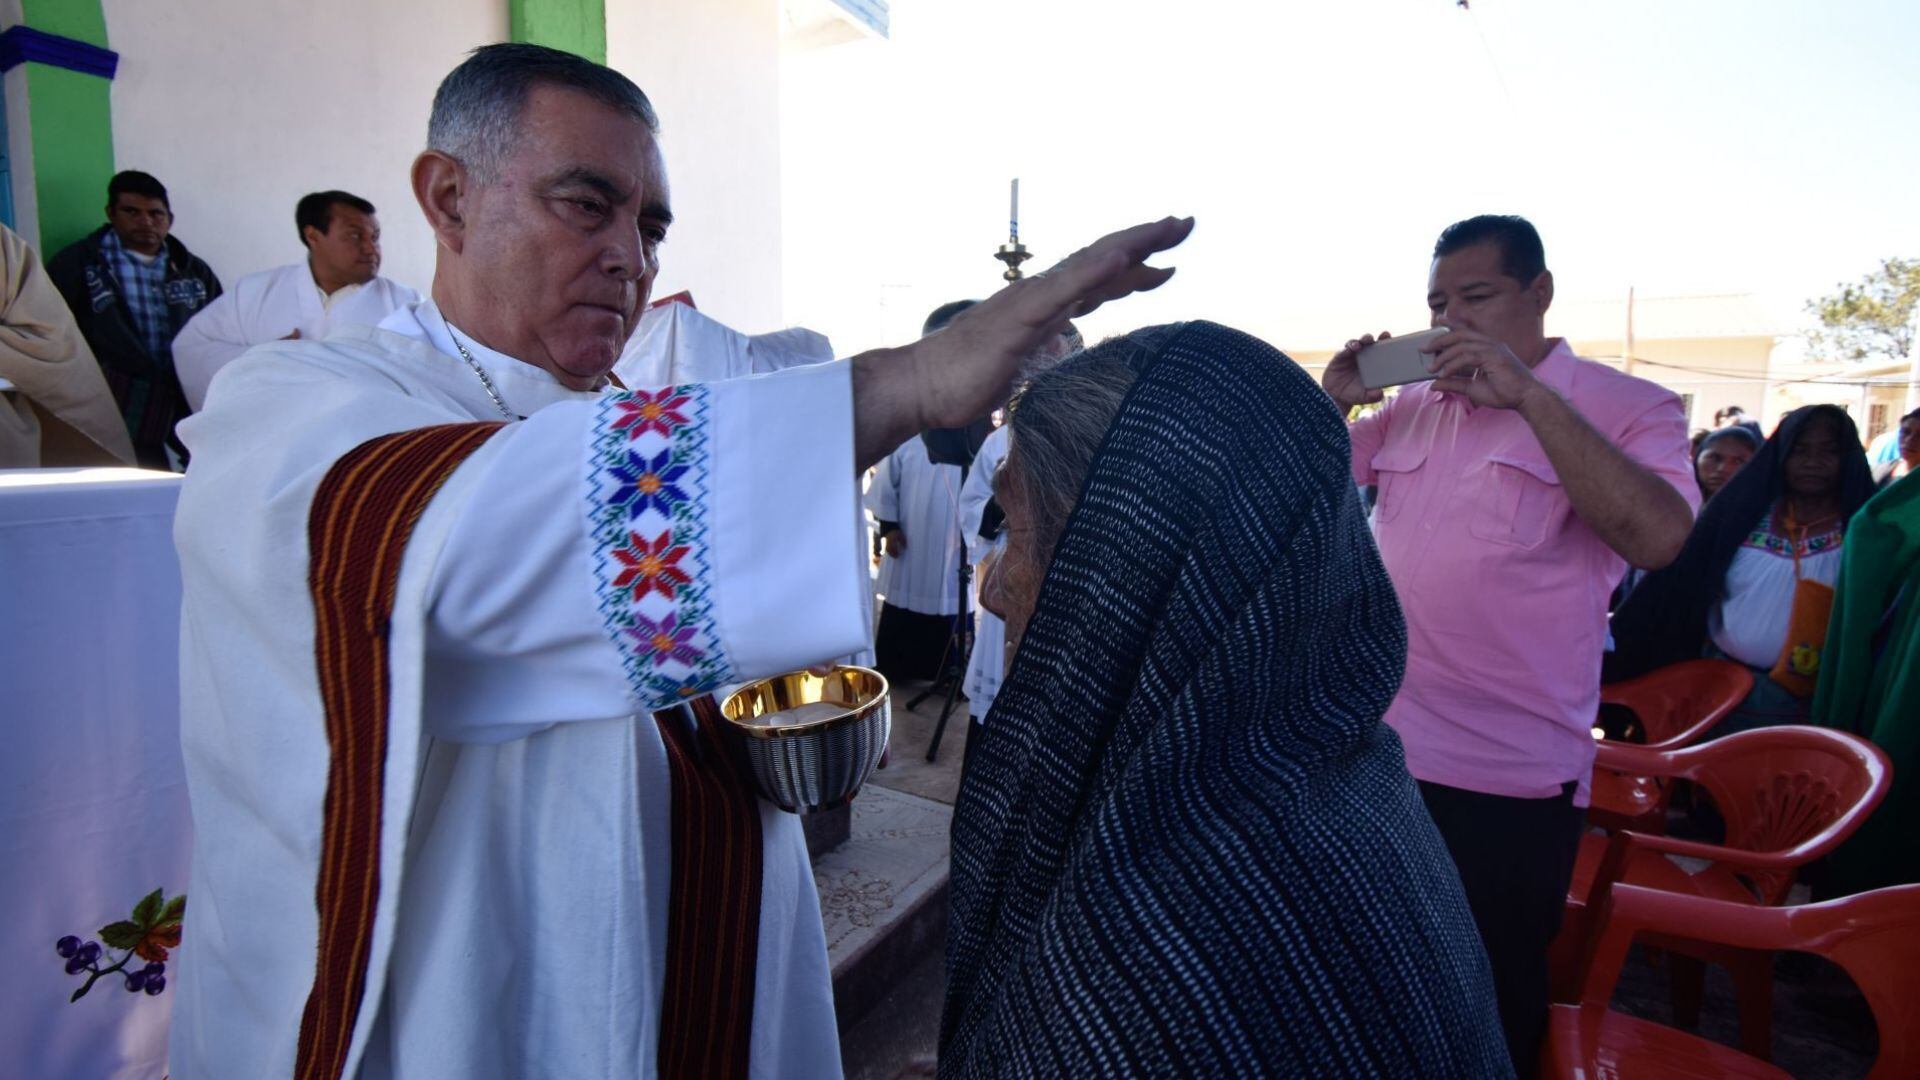 Iglesia católica acusa fábrica de bots en caso del obispo de Chilpancingo; FGE tiene videos que prueban secuestro, aseguran